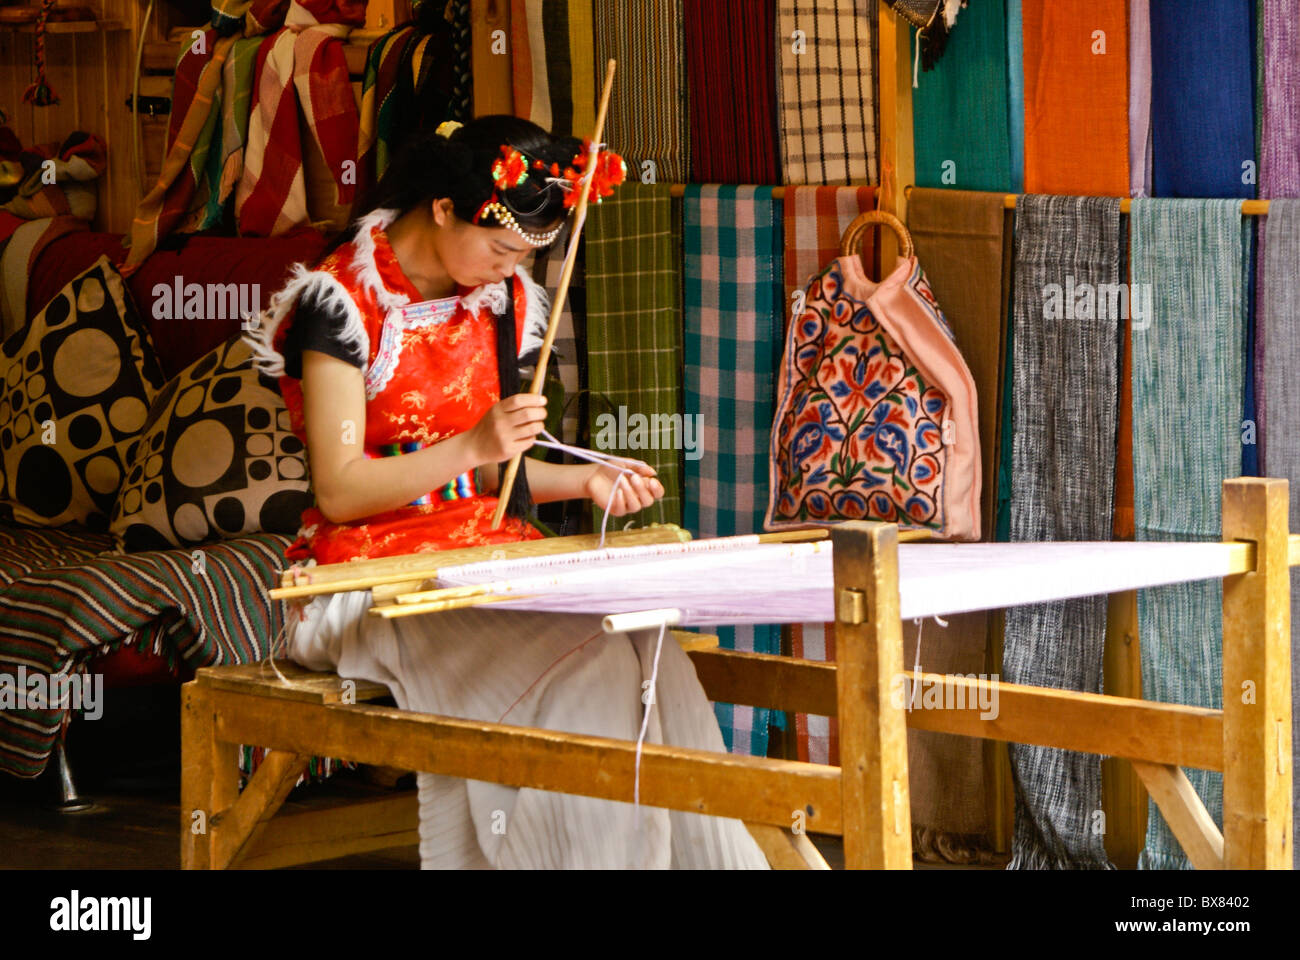 Young woman weaving in textile shop, Lijiang, Yunnan, China Stock Photo